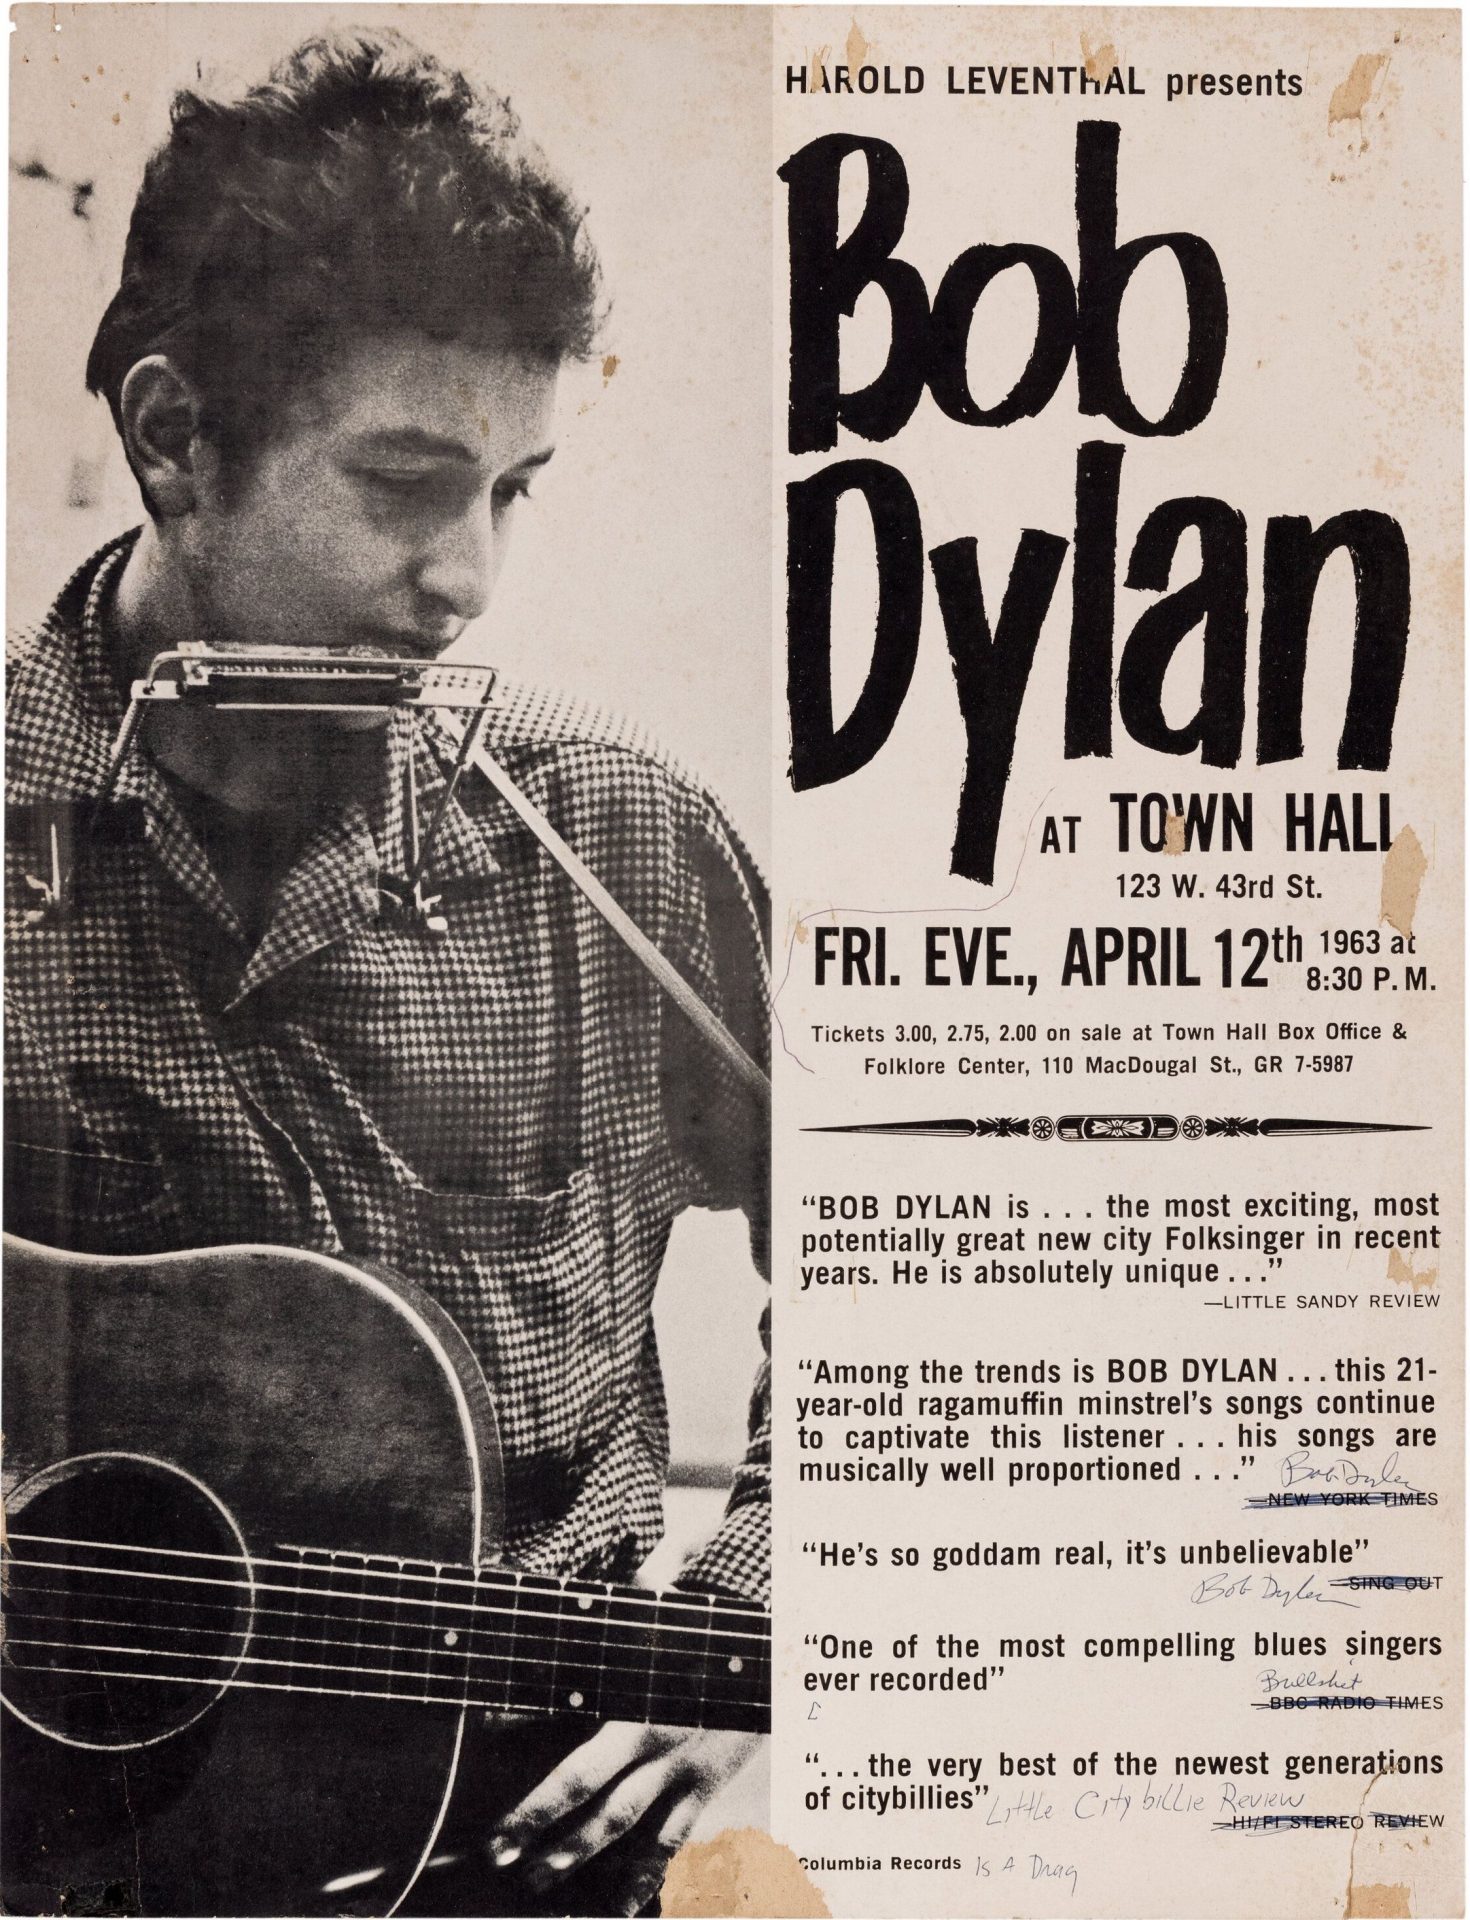 Bob Dylan at Town Hall